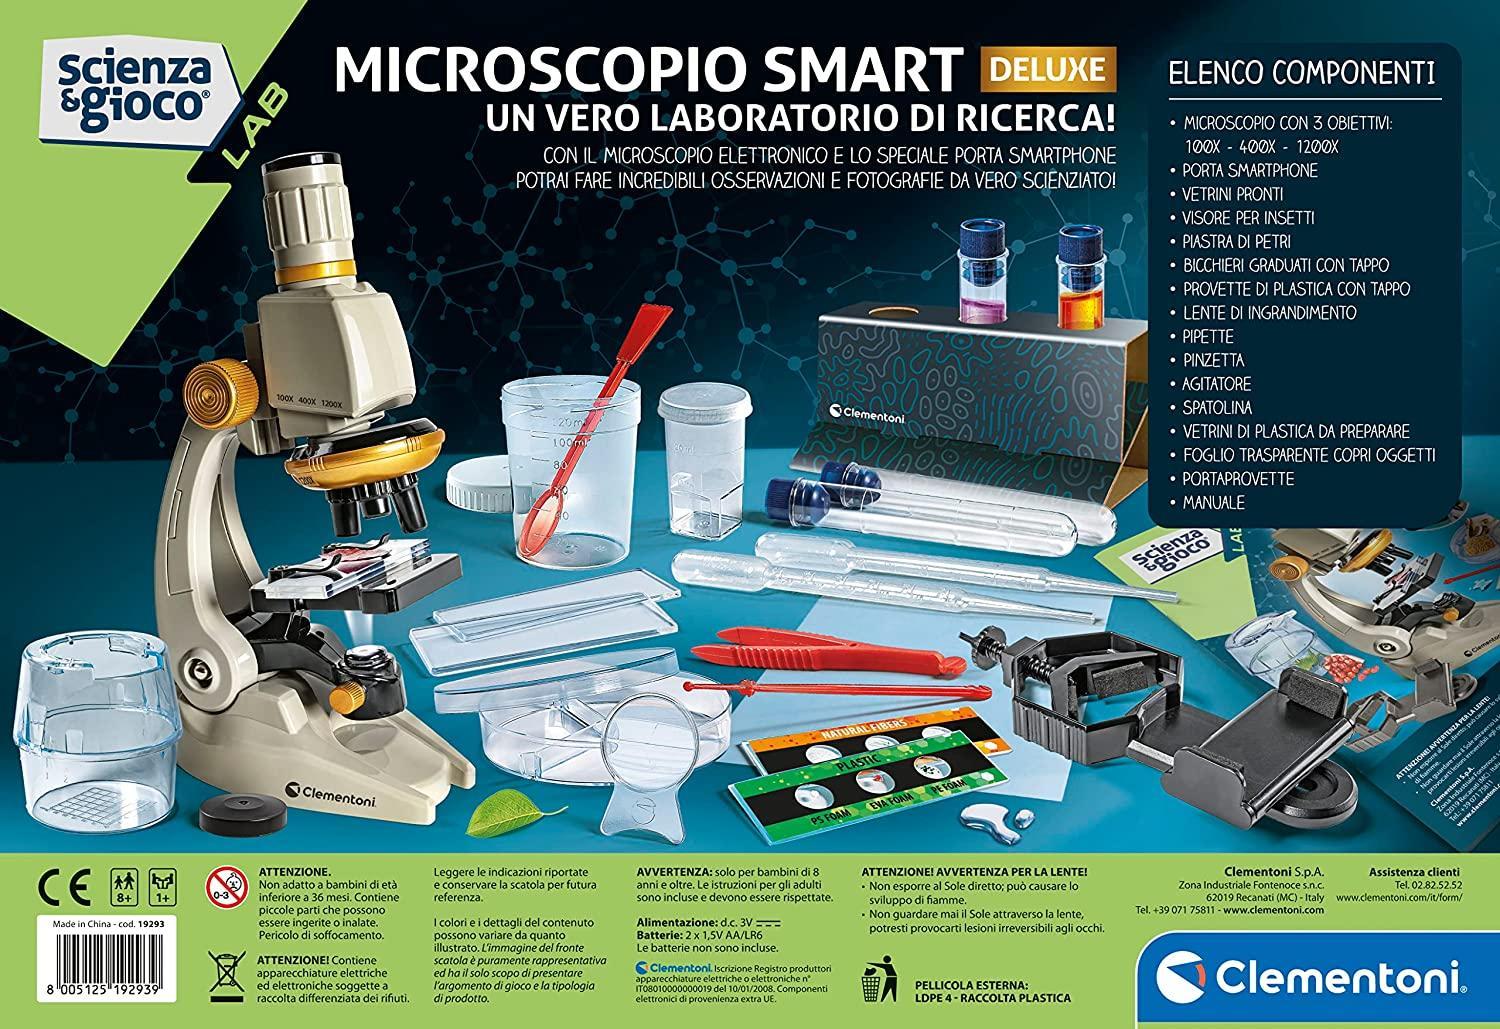 clementoni microscopio smart deluxe